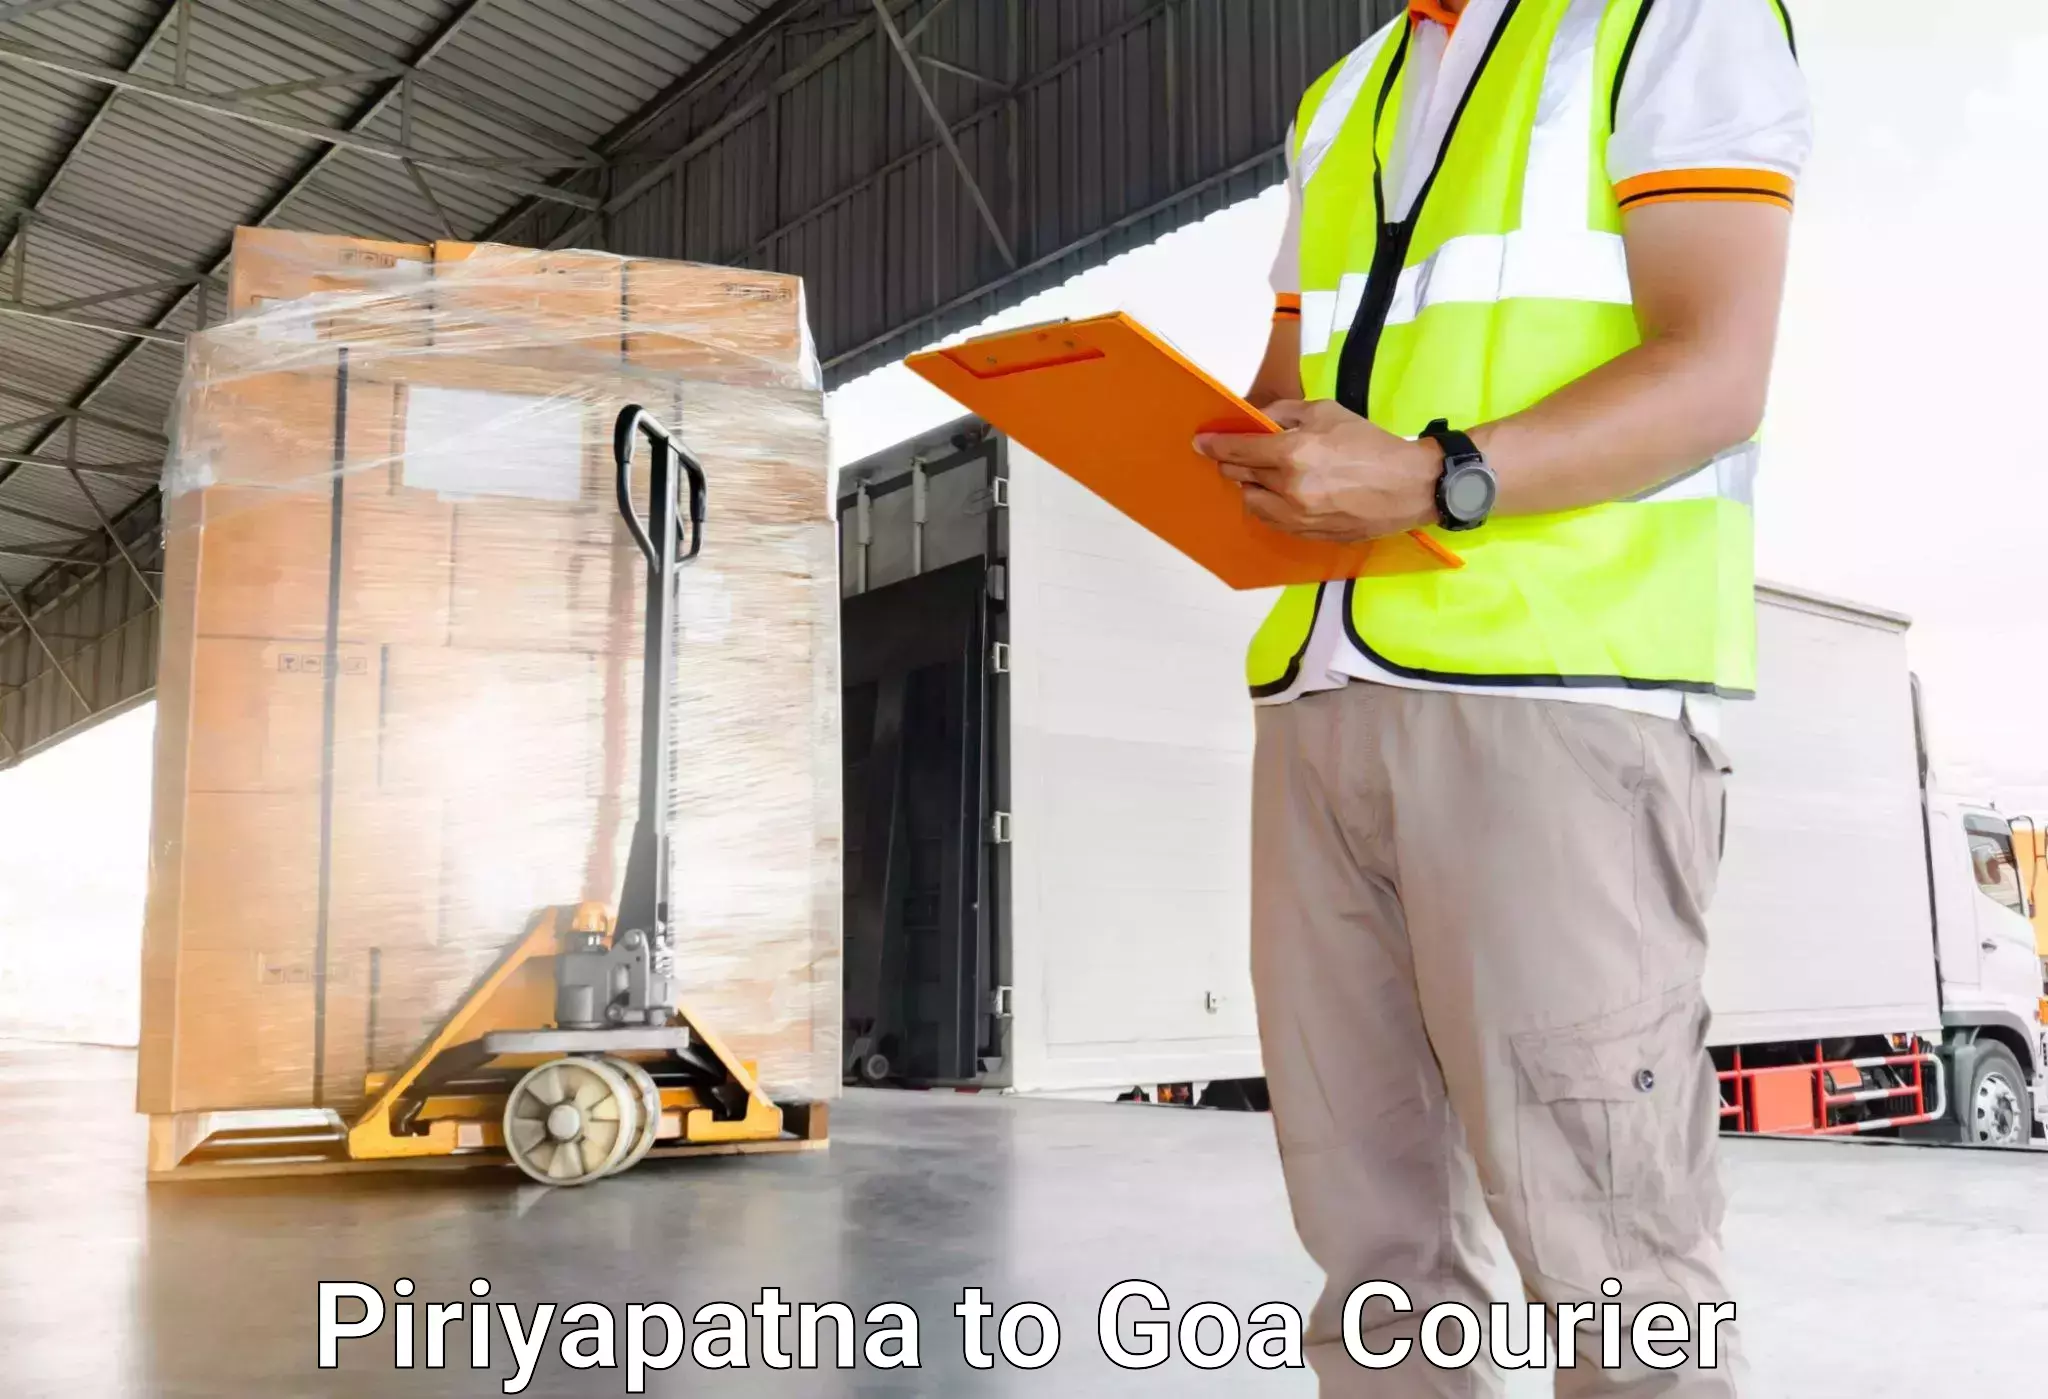 Baggage transport innovation Piriyapatna to Goa